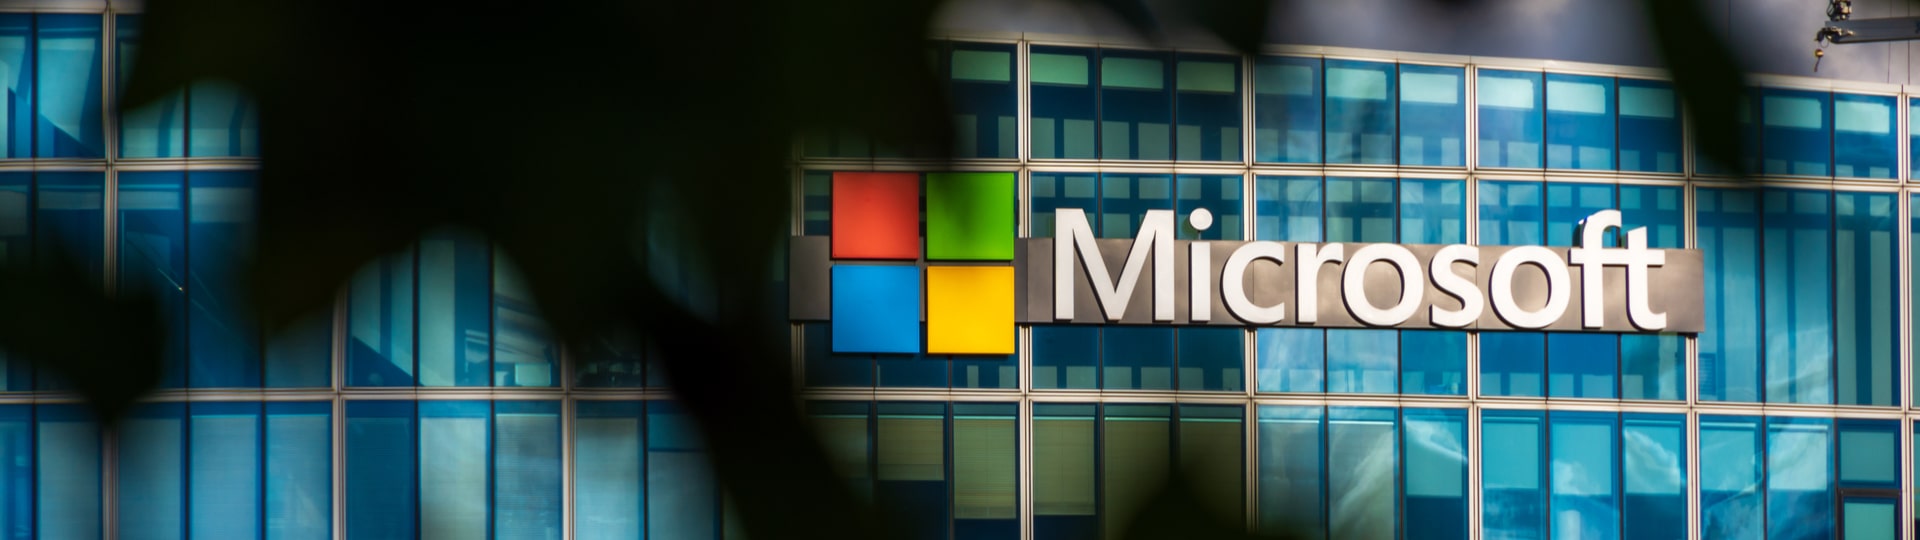 Microsoft zvýšil tržby i zisk o pětinu díky poptávce po cloudových službách